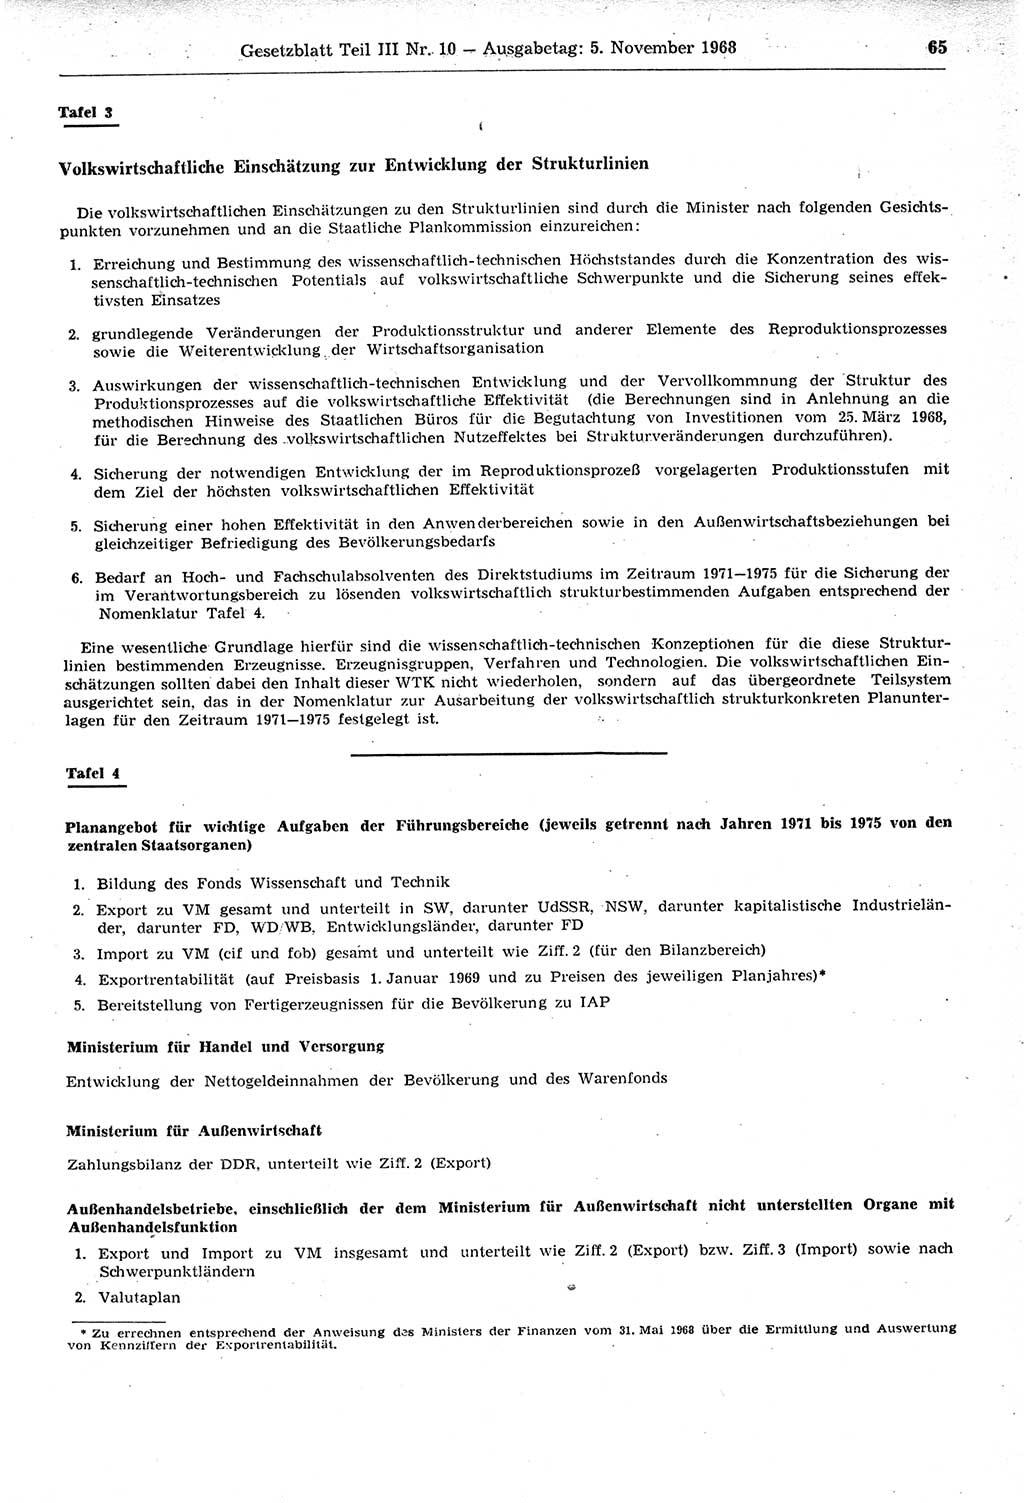 Gesetzblatt (GBl.) der Deutschen Demokratischen Republik (DDR) Teil ⅠⅠⅠ 1968, Seite 65 (GBl. DDR ⅠⅠⅠ 1968, S. 65)